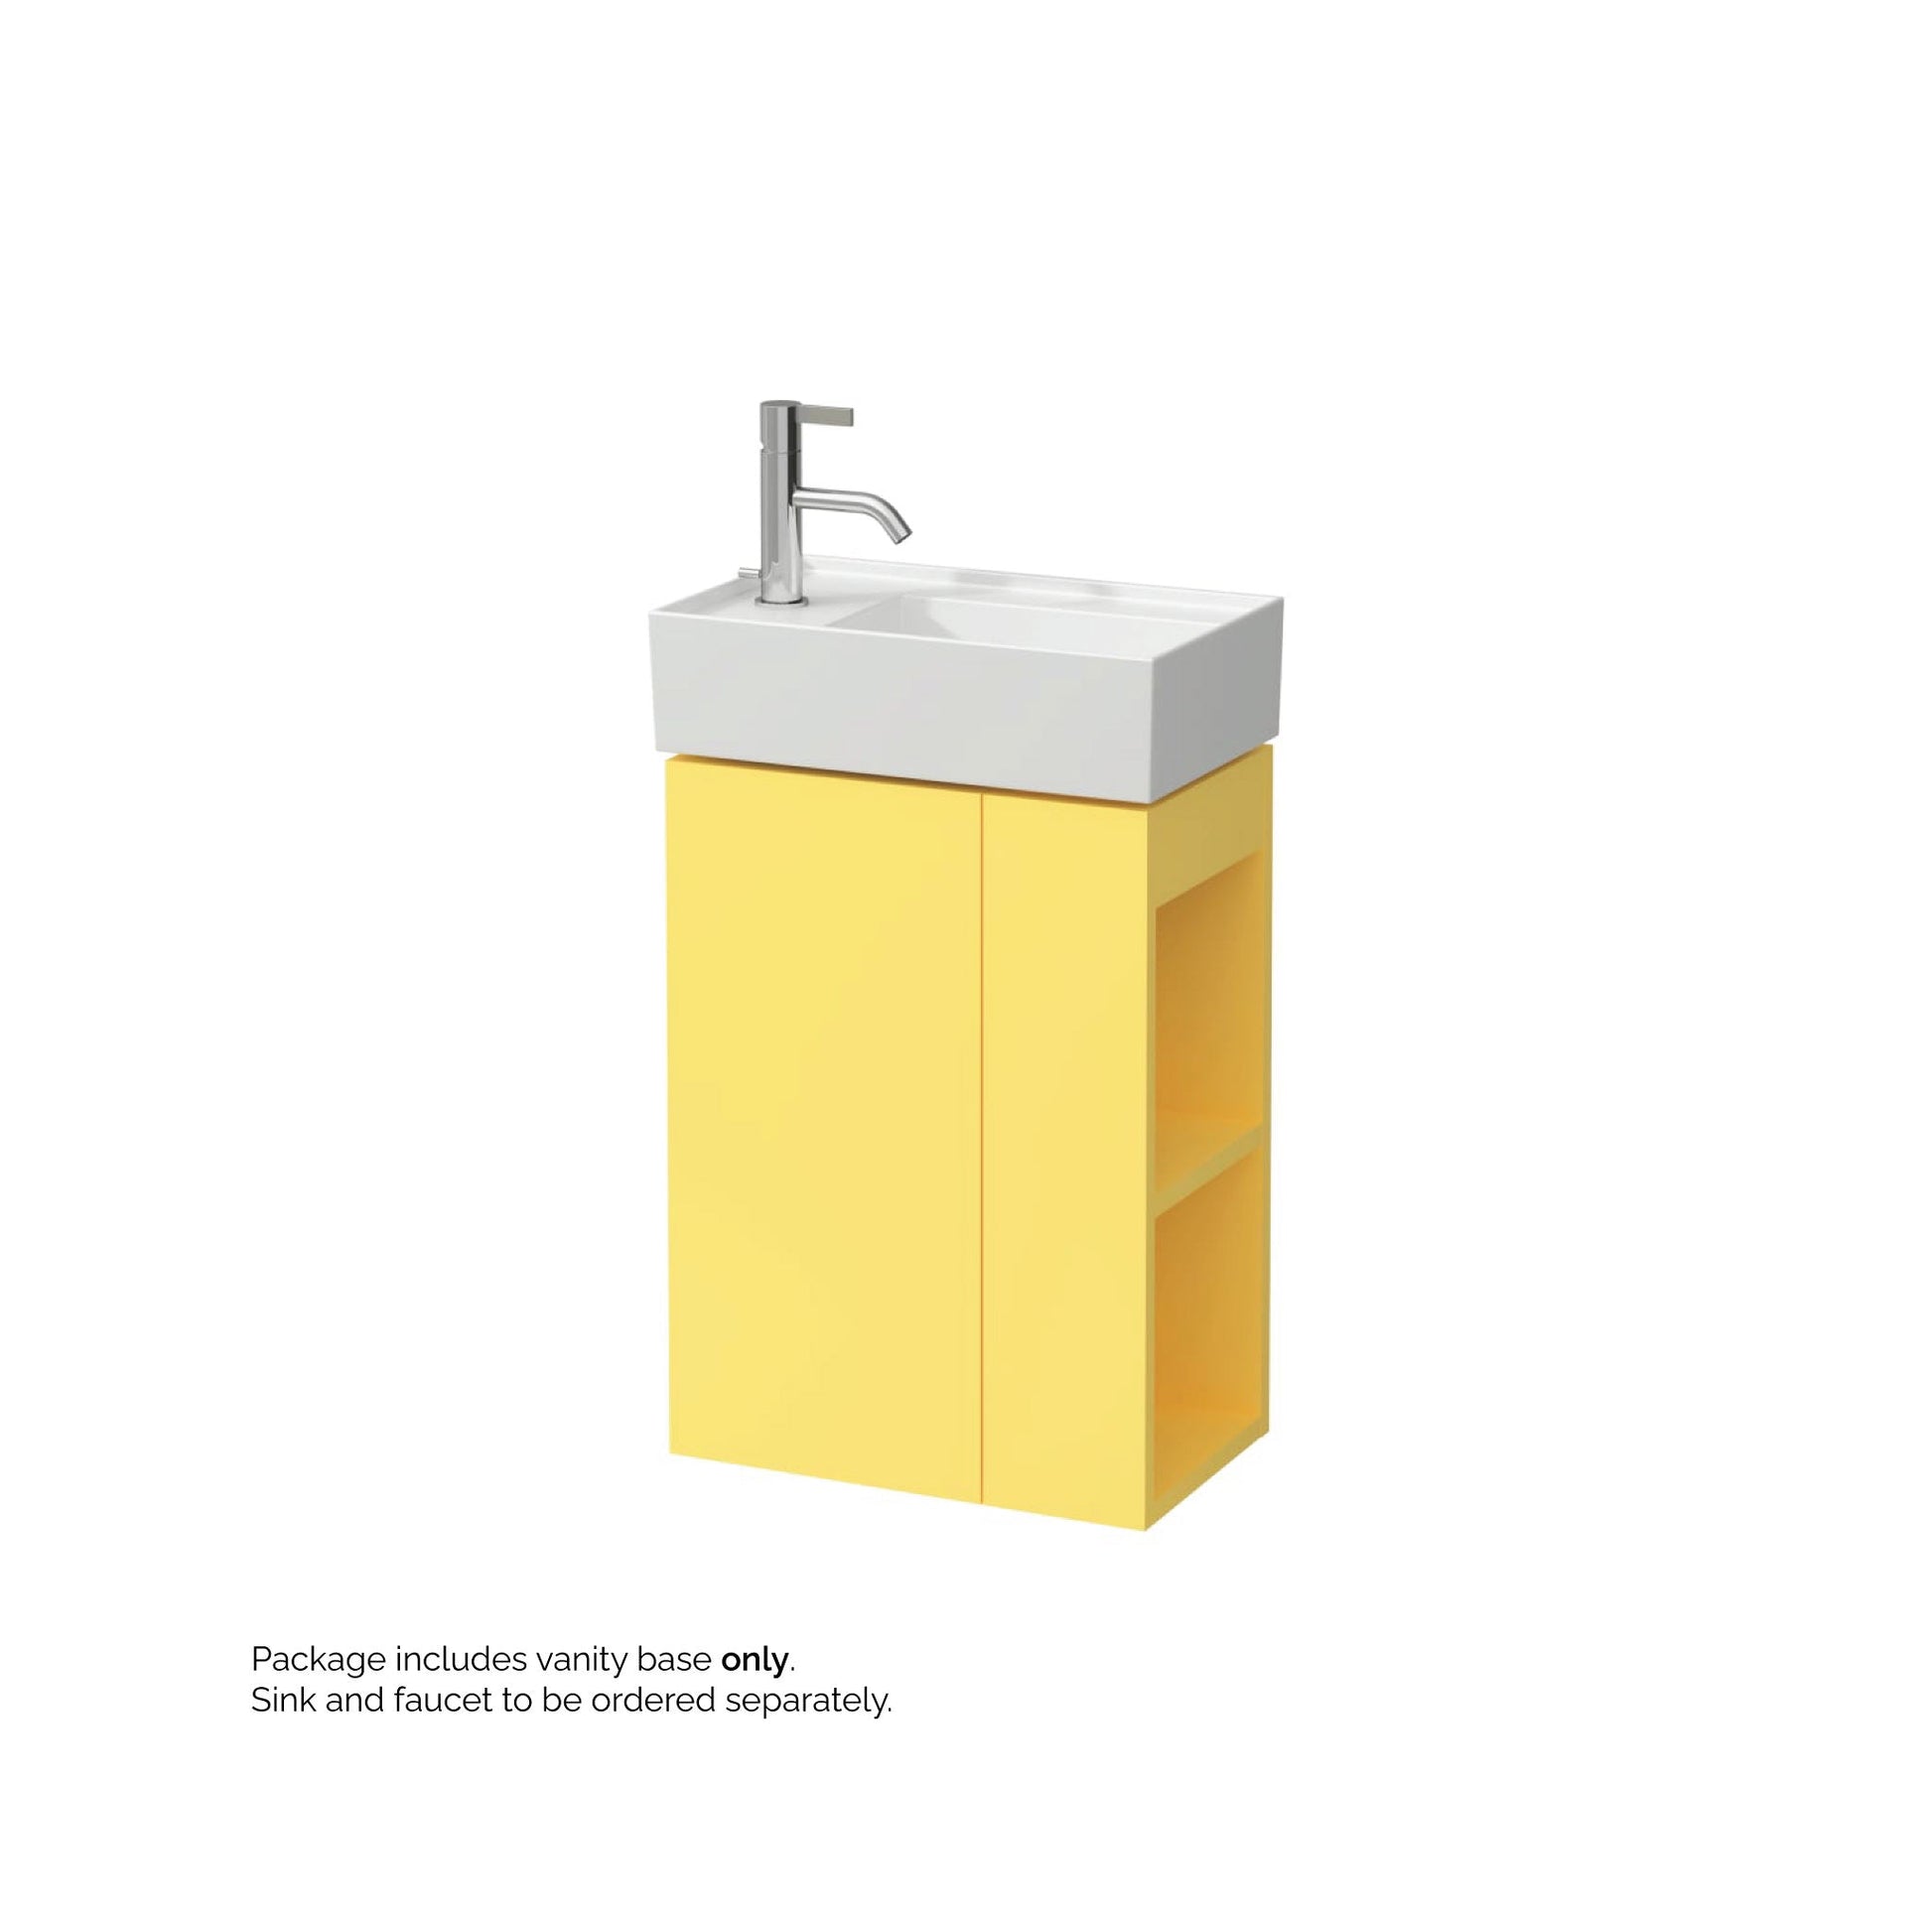 Laufen Kartell 17" 1-Door Left-Hinged Mustard Yellow Wall-Mounted Vanity With 2-Tier Open Shelves